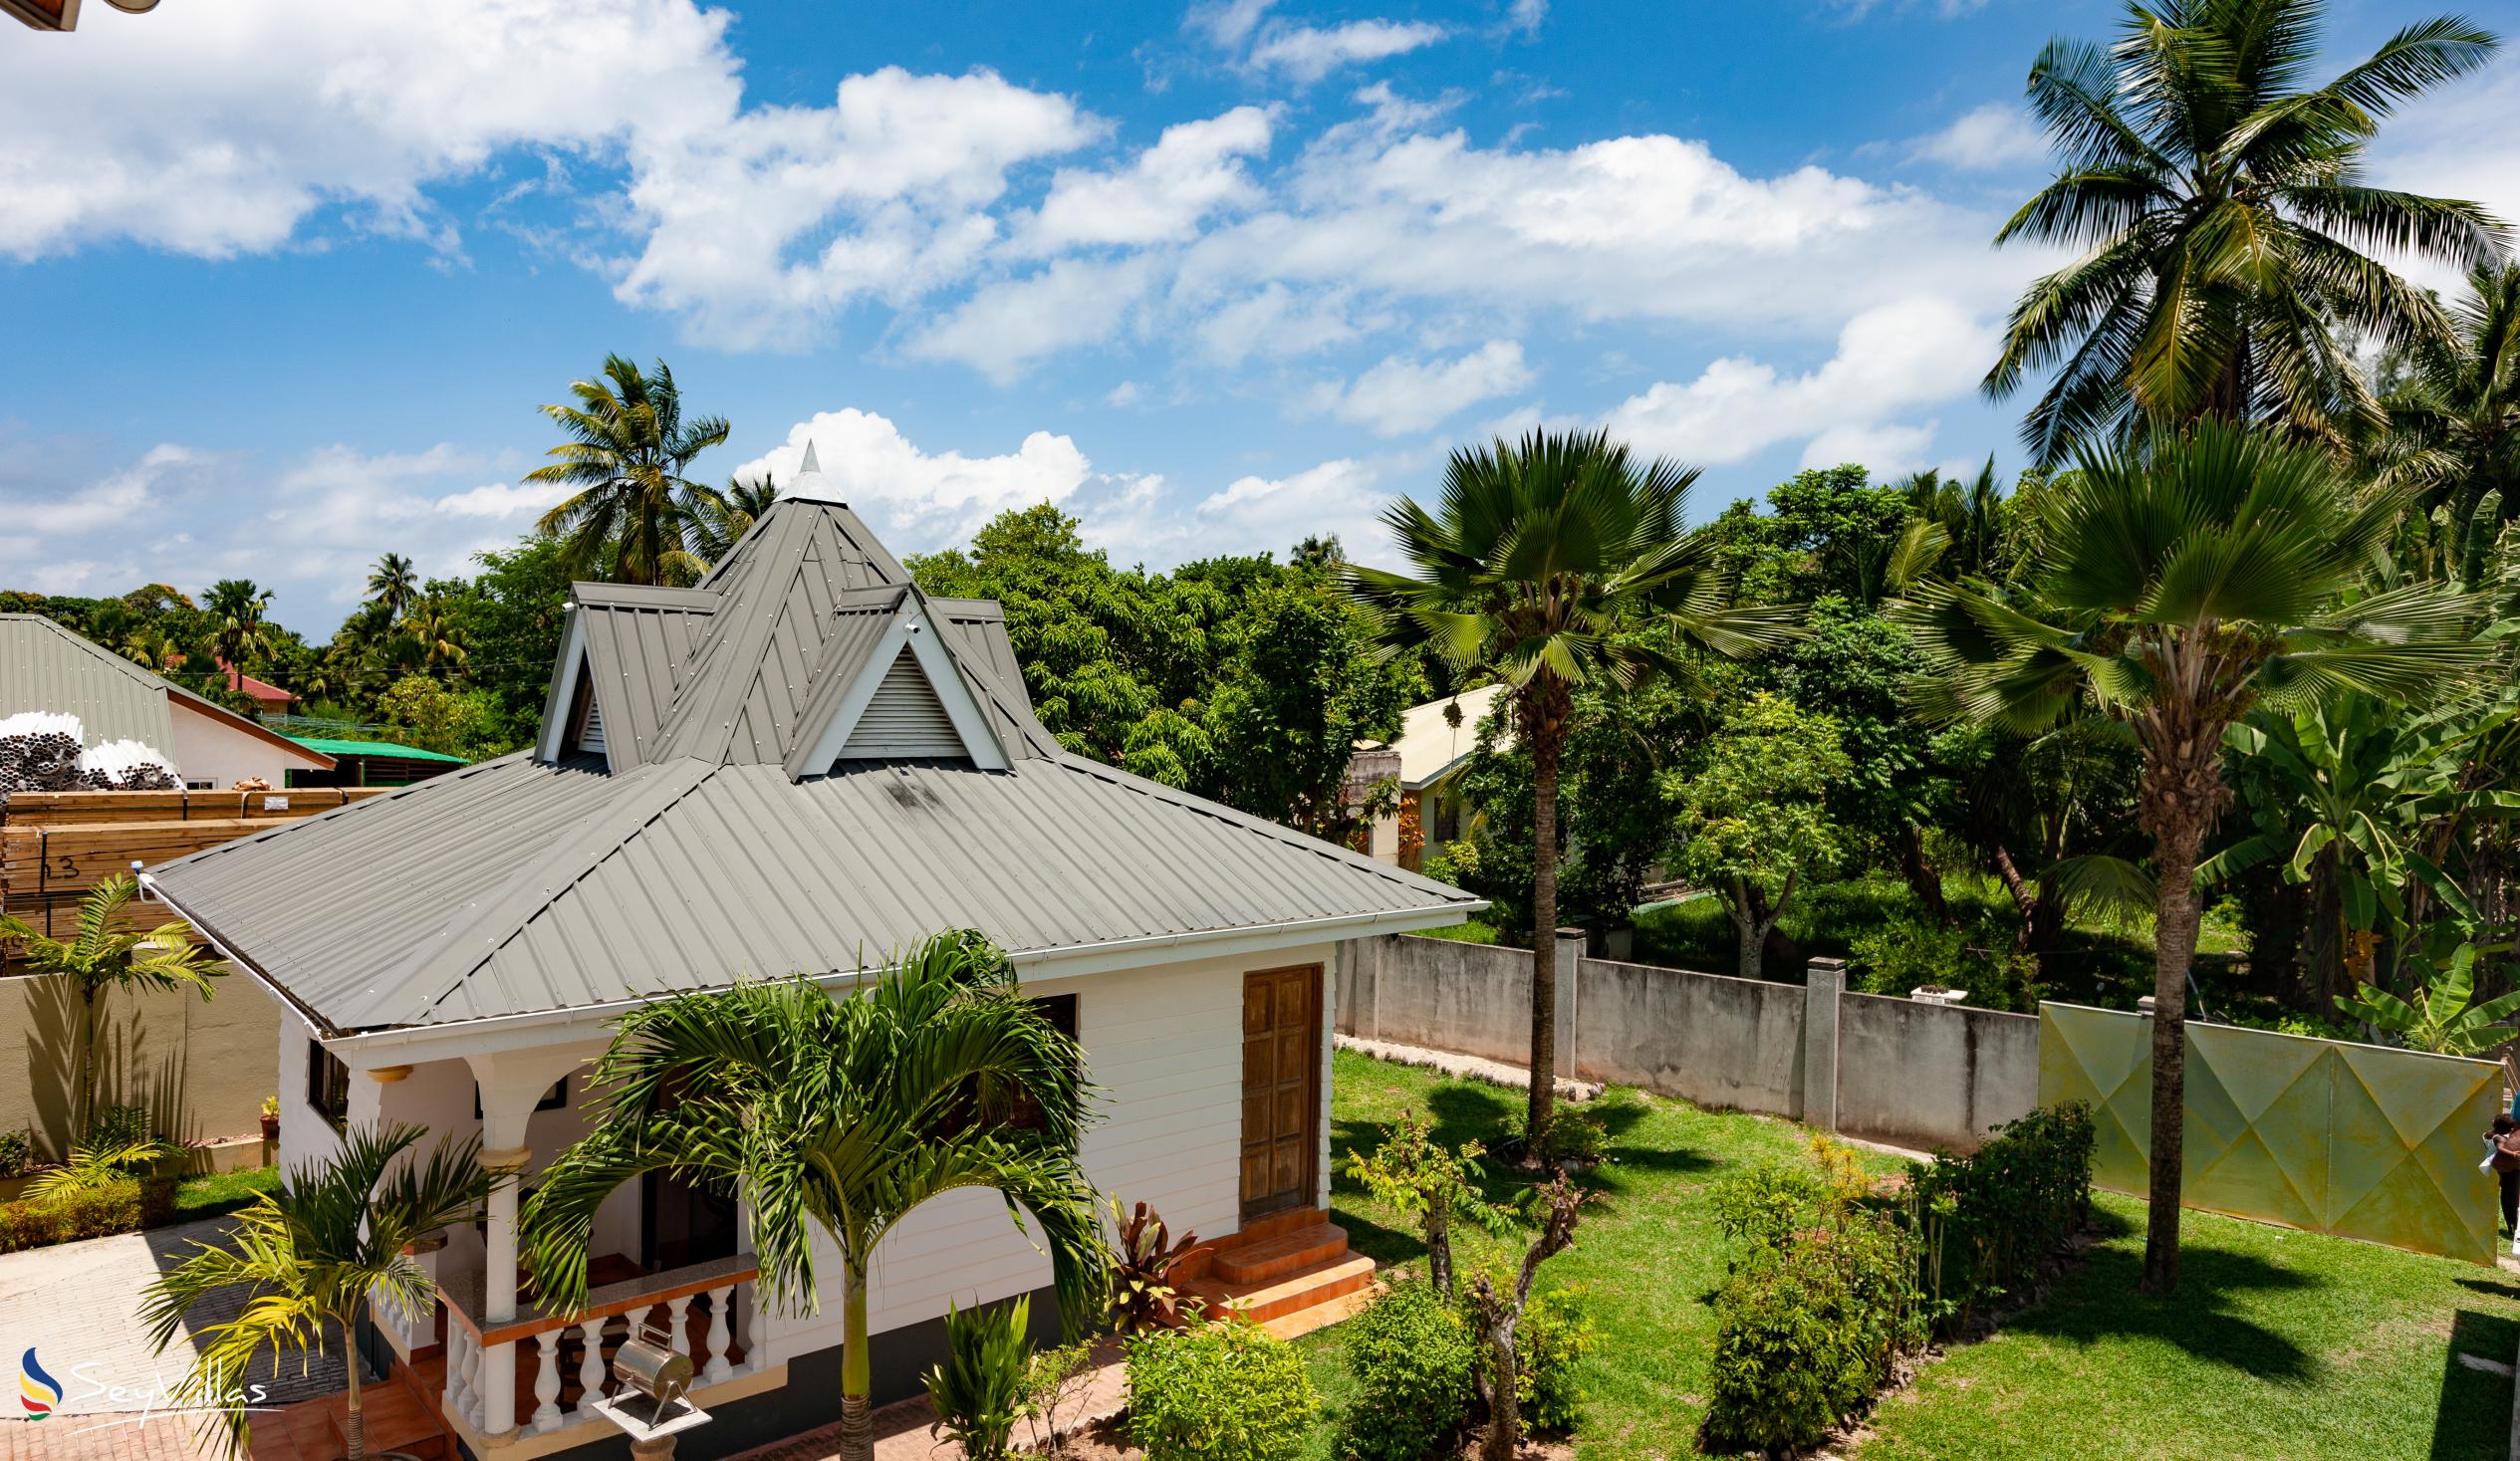 Foto 8: Villa Aya - Aussenbereich - Praslin (Seychellen)